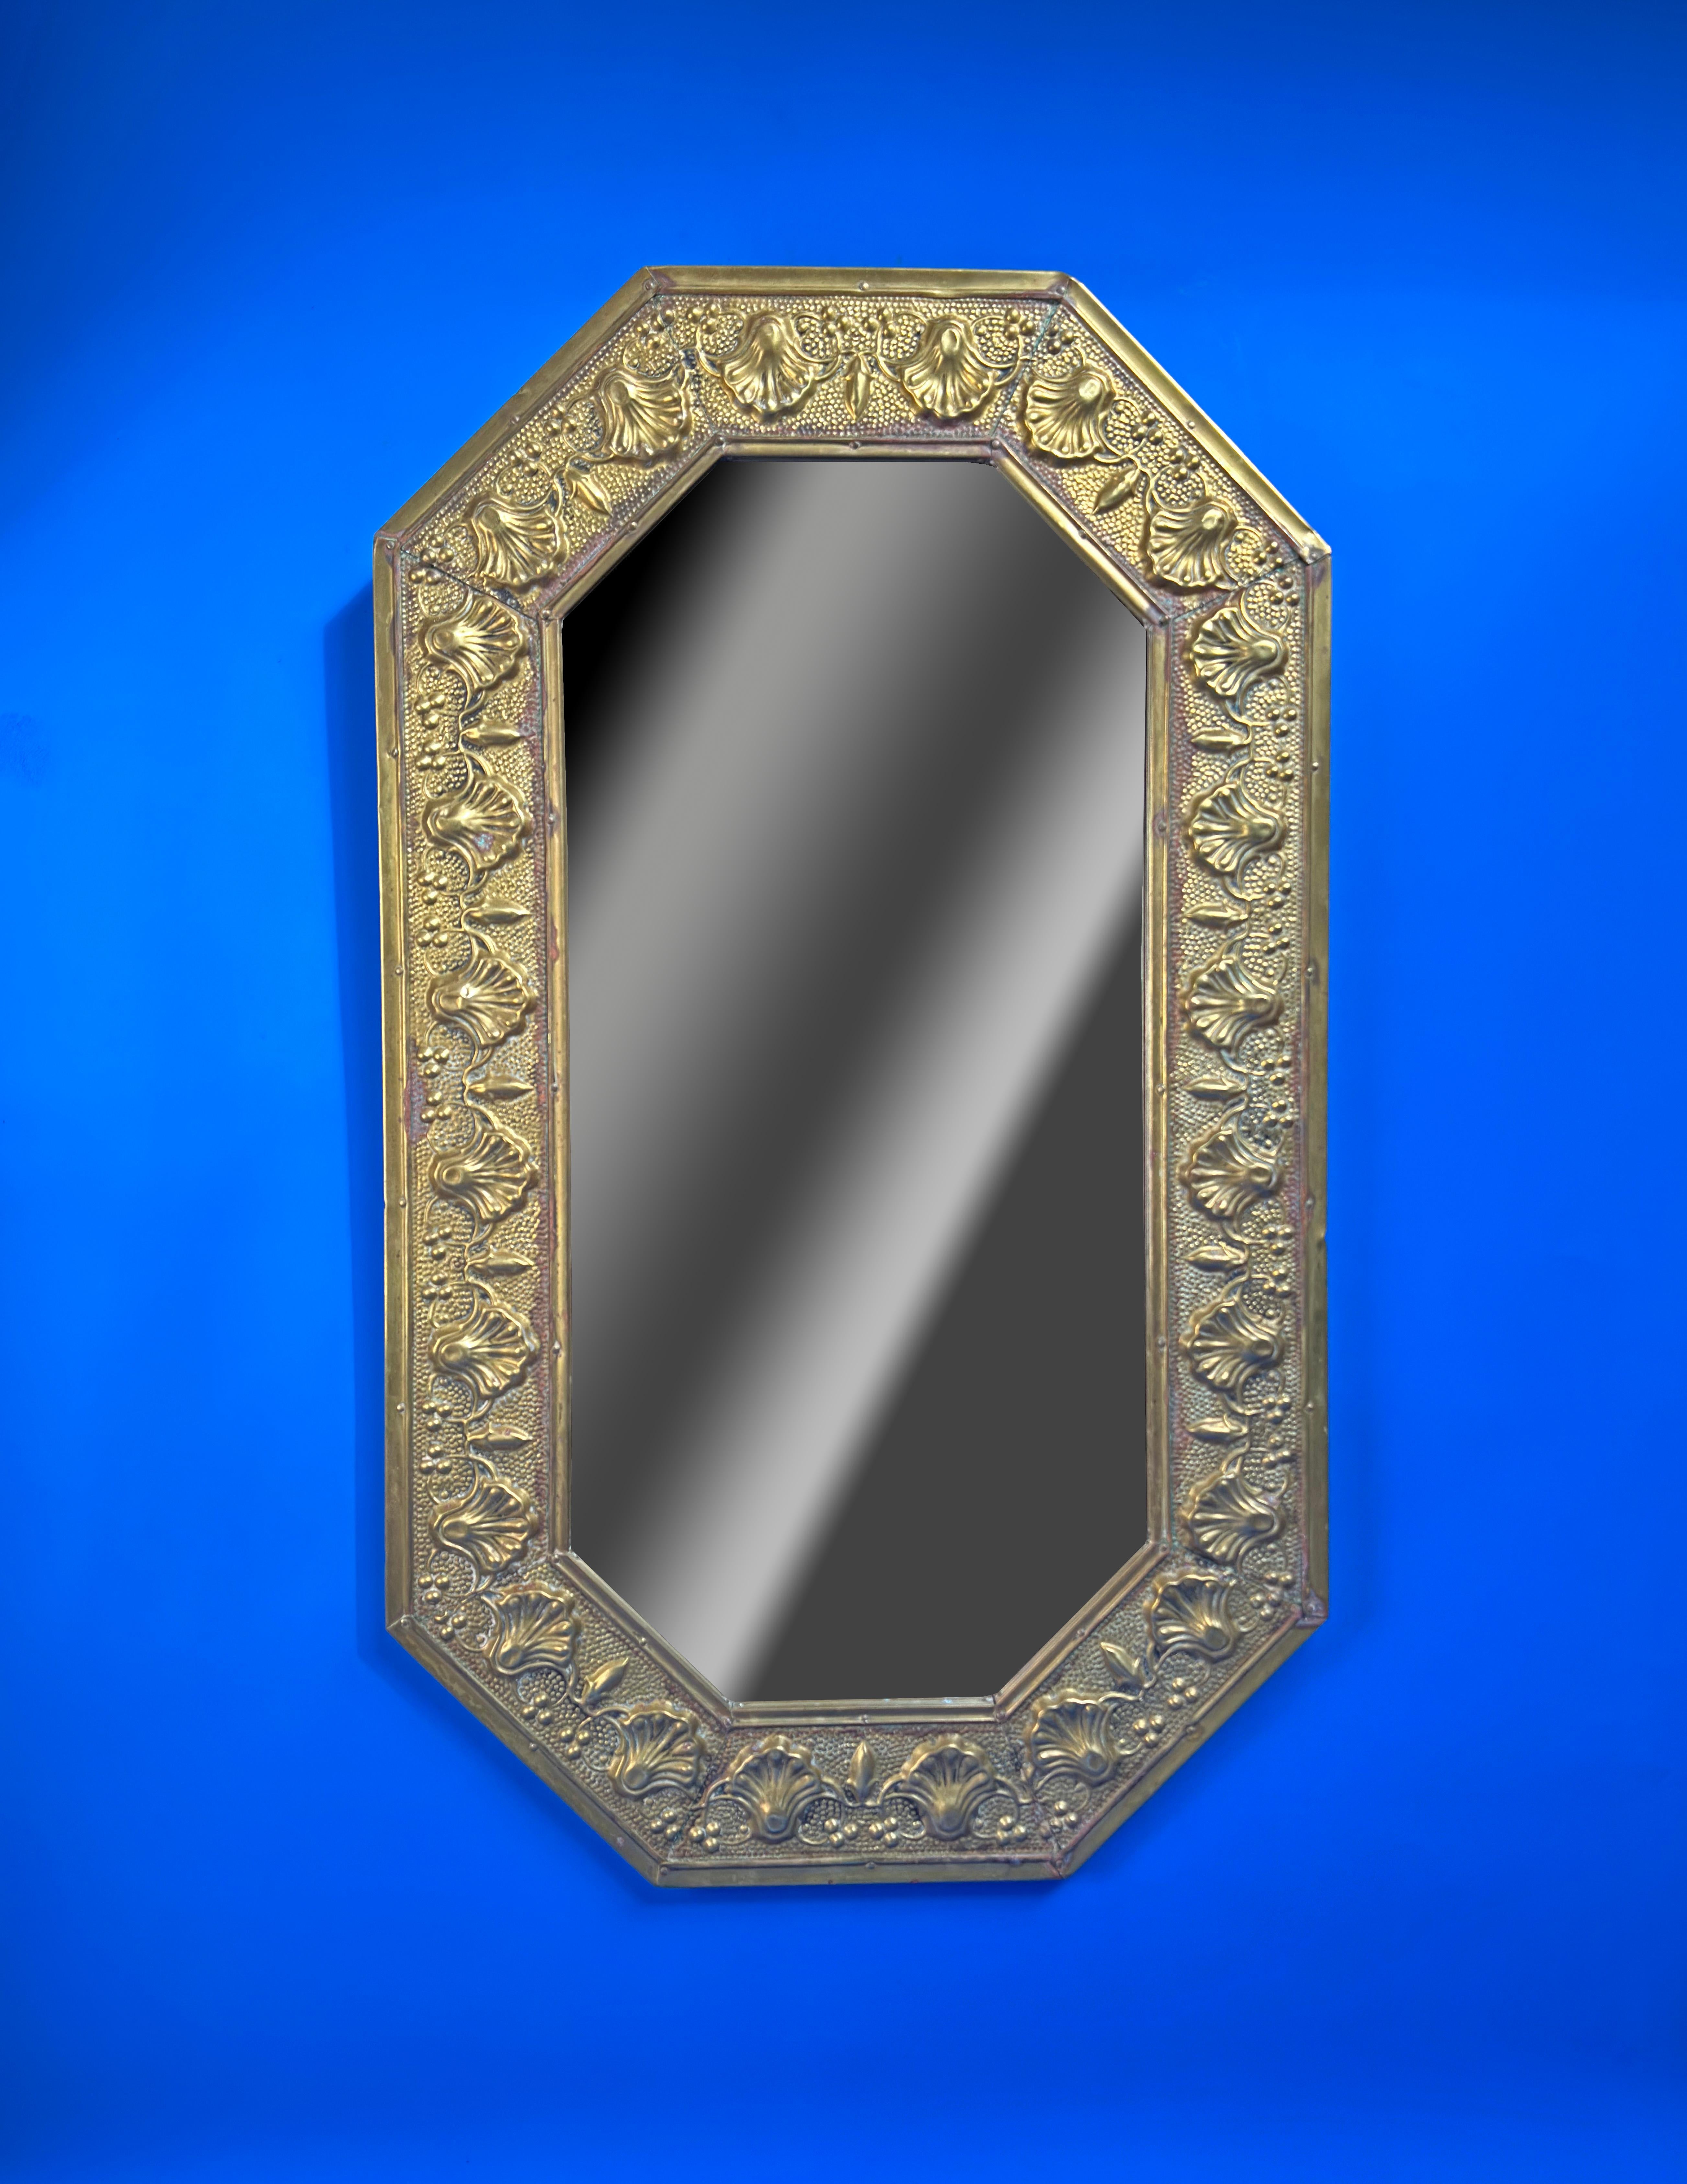 Un beau miroir artisanal fabriqué en Angleterre dans les années 1920. 

Le miroir octogonal a été créé à partir d'une feuille de laiton, puis martelé selon la technique du repoussé pour créer la bordure décorative du cadre. 

Le miroir a été monté